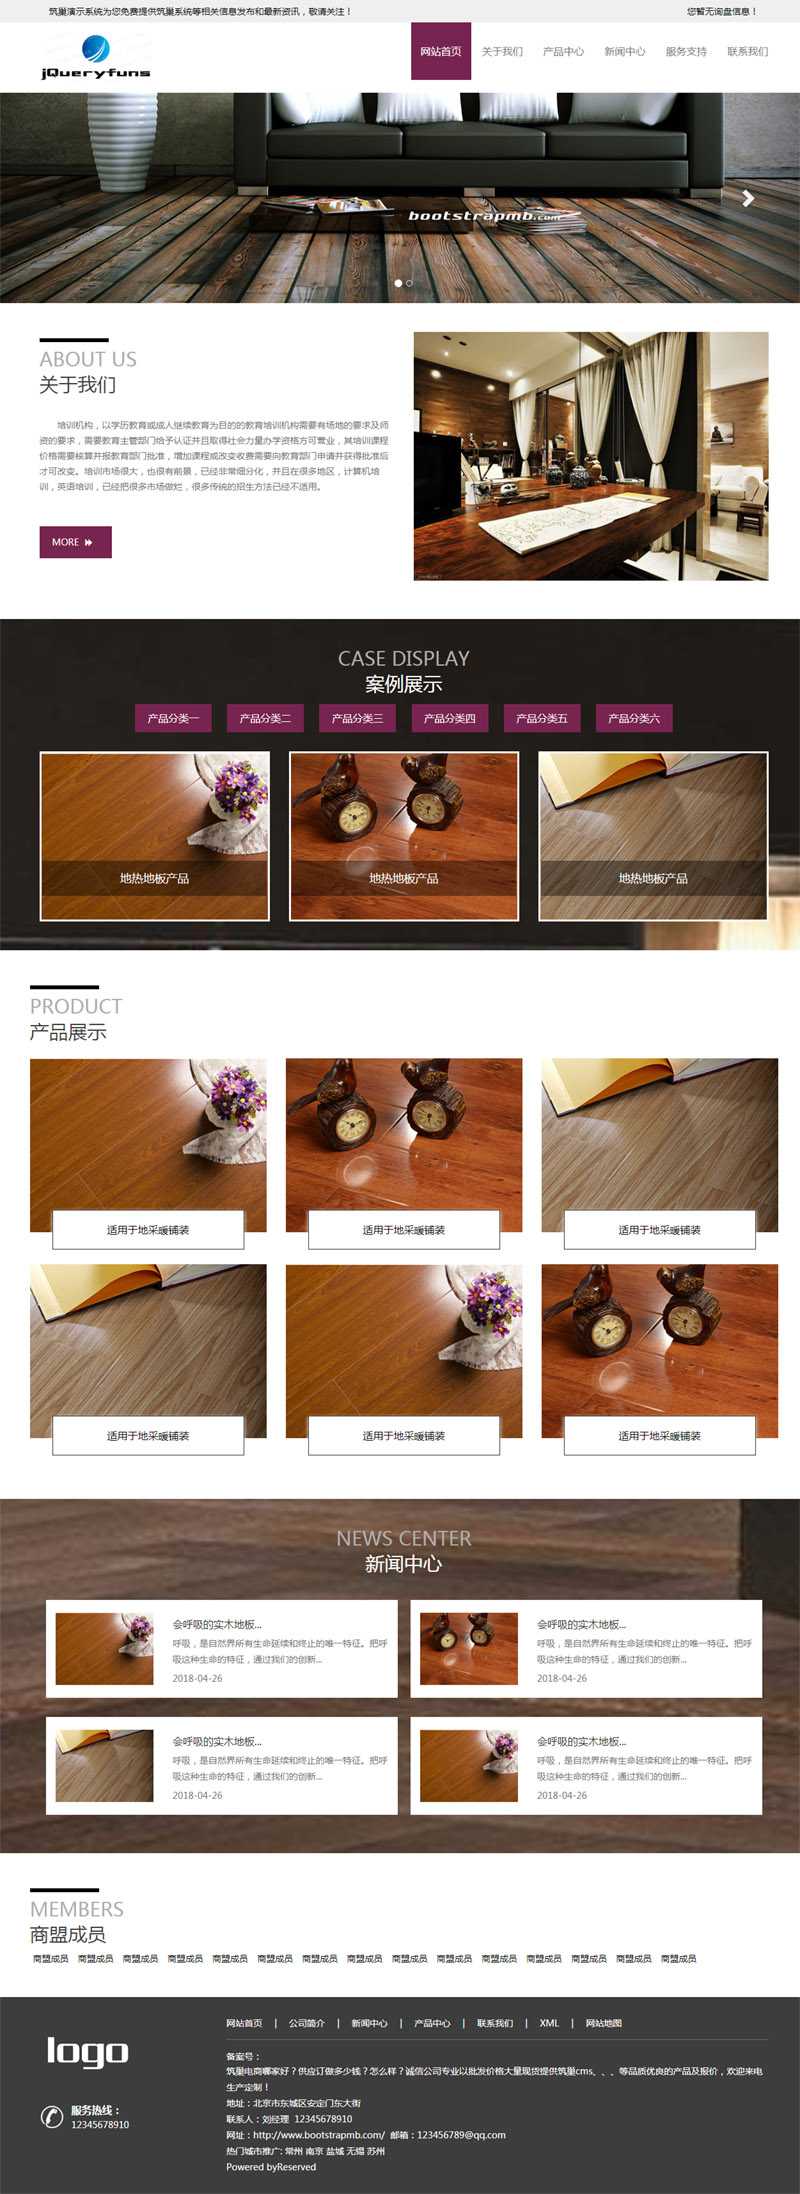 紫色大气宽屏Bootstrap响应式木地板公司网站模板6113